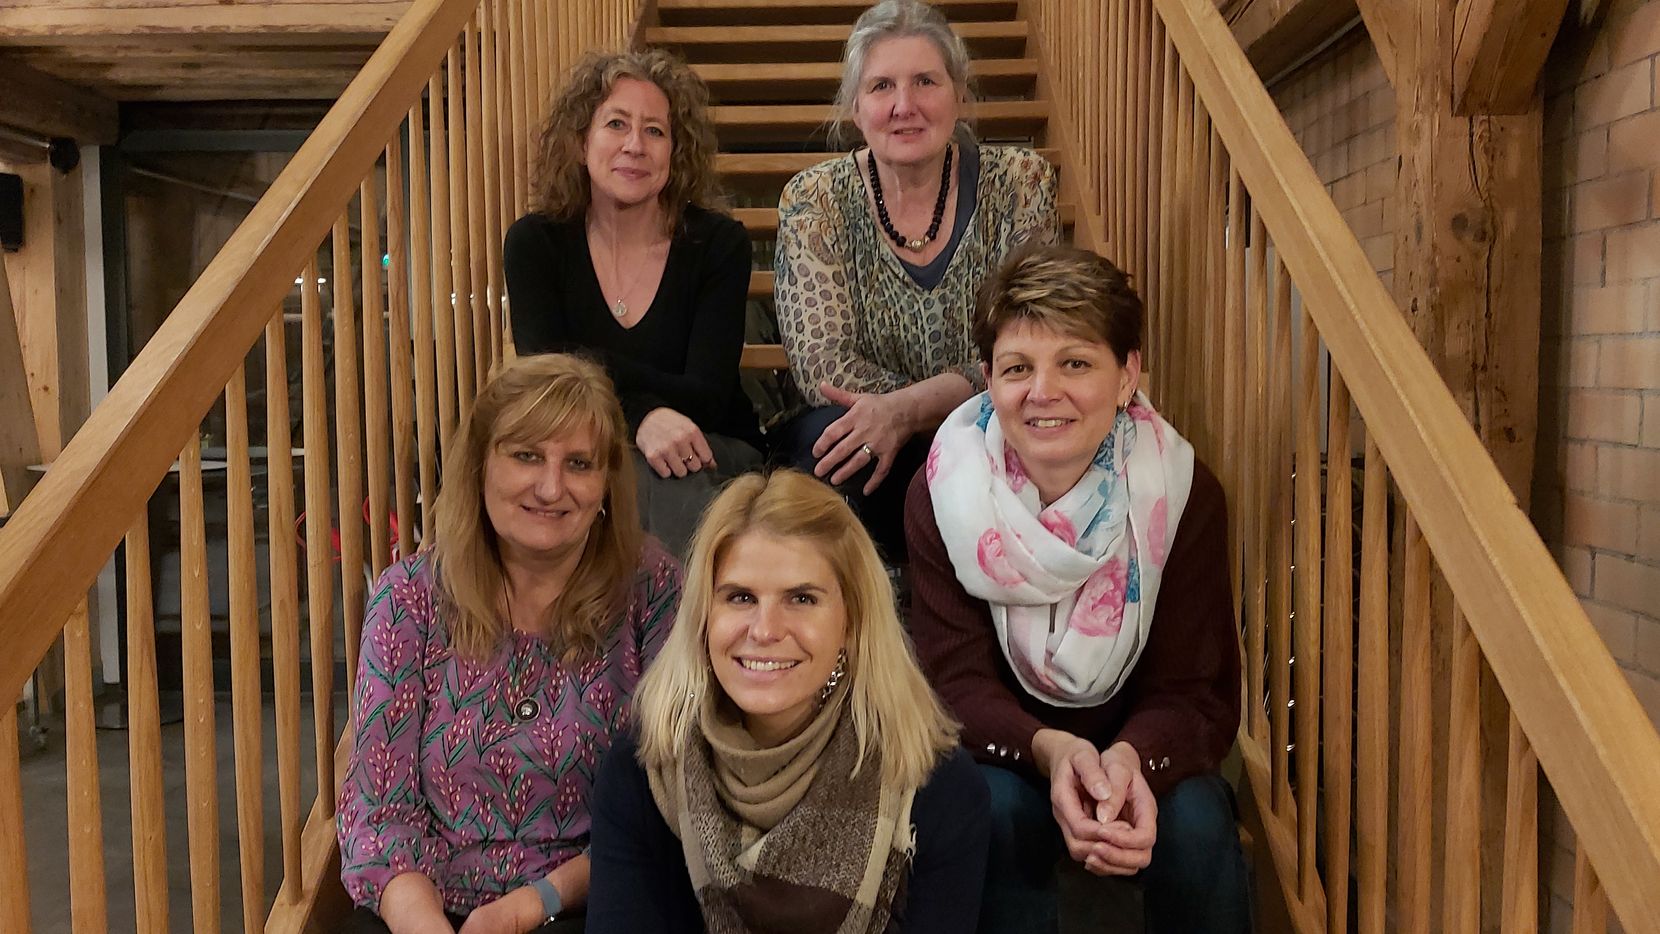 Man sieht fünf Frauen mittleren Alters, die auf einer hölzernen Treppe sitzen.